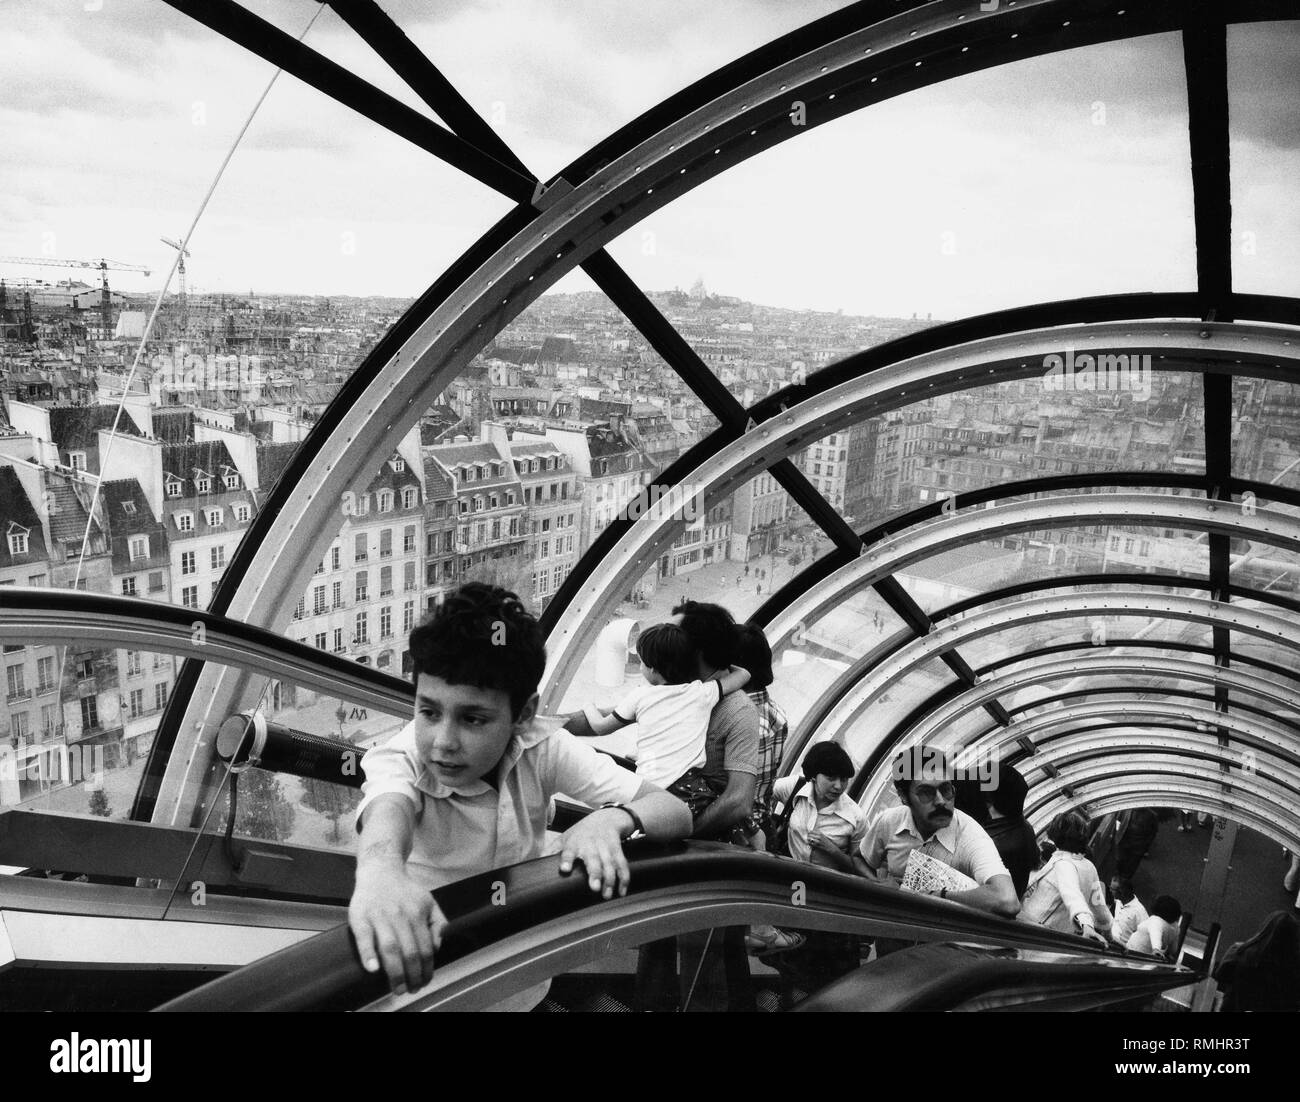 Les gens sur un escalator dans le Centre Georges Pompidou à Paris. Photo non datée. Banque D'Images